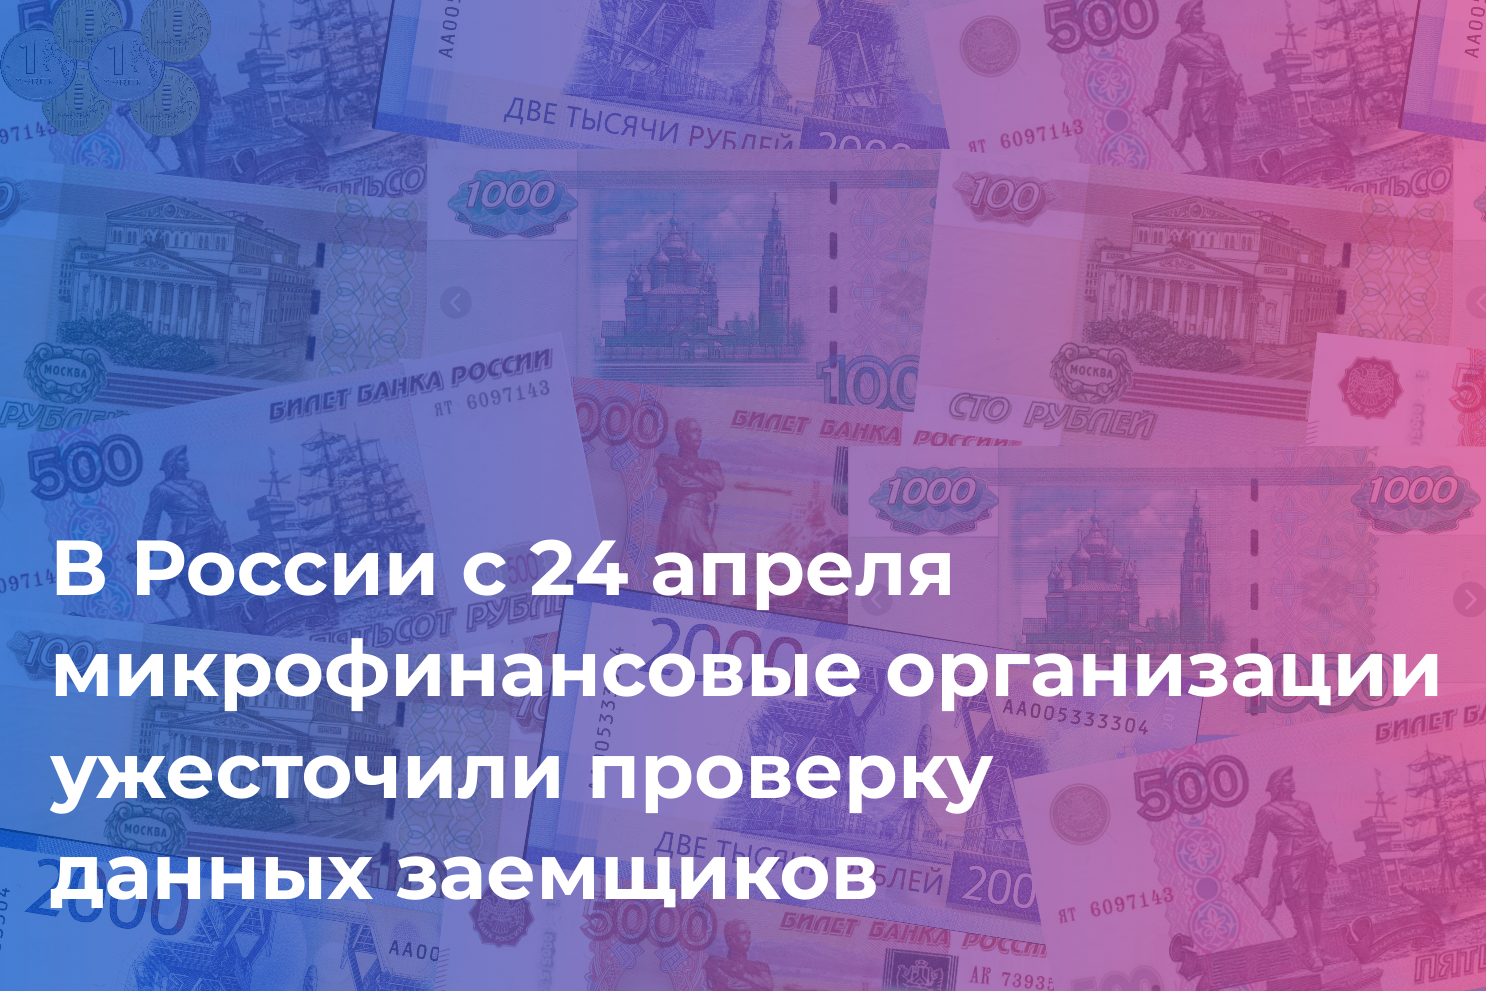 Финансовая безопасность от Банка России: получение онлайн-займов стало безопаснее